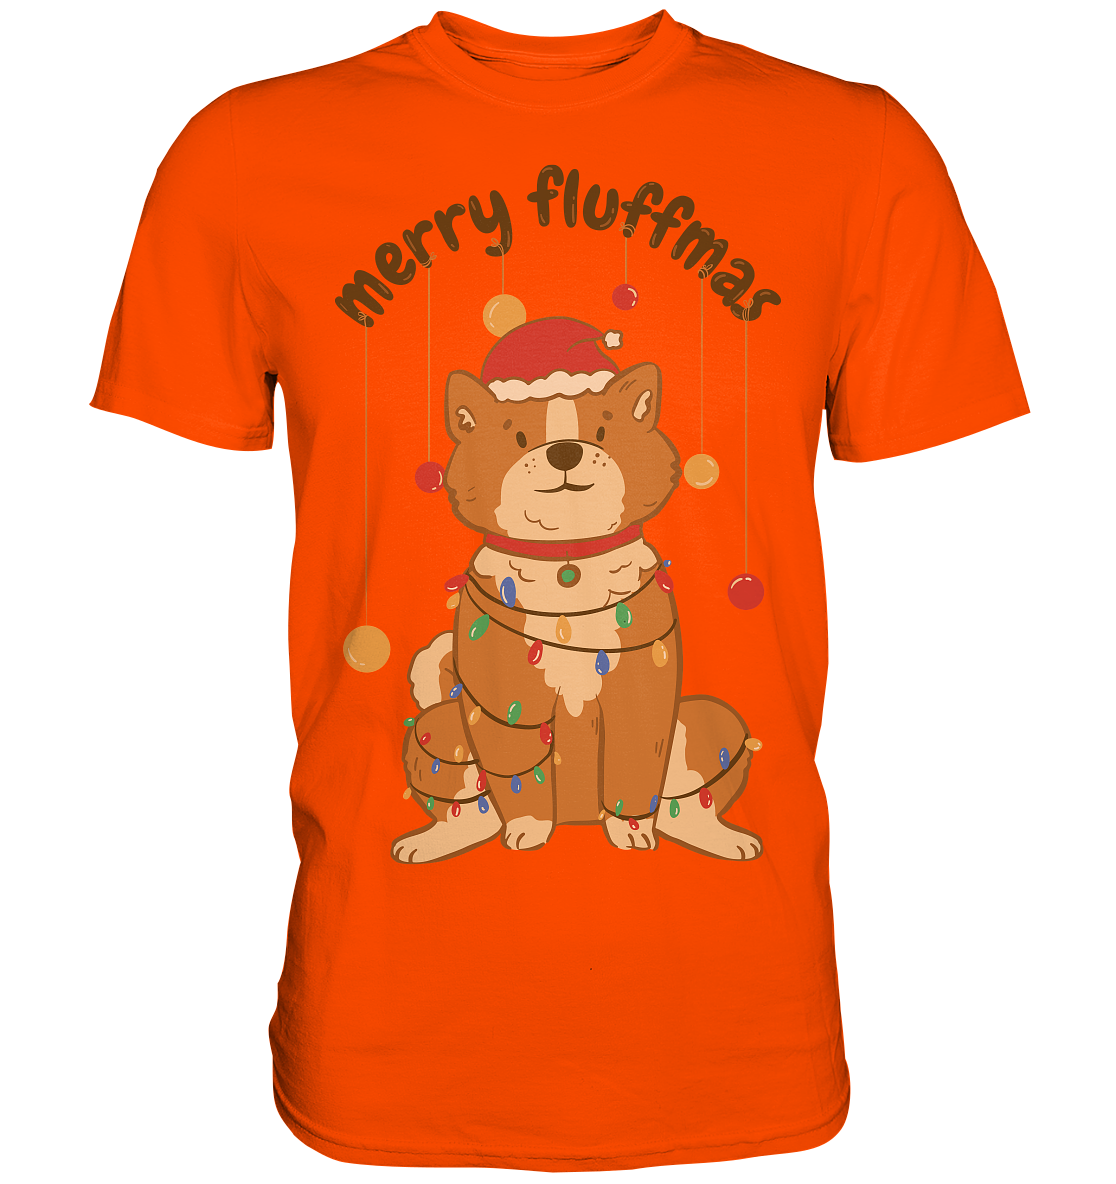 Weihnachtliches Motiv Fun Merry Fluffmas - Premium Shirt